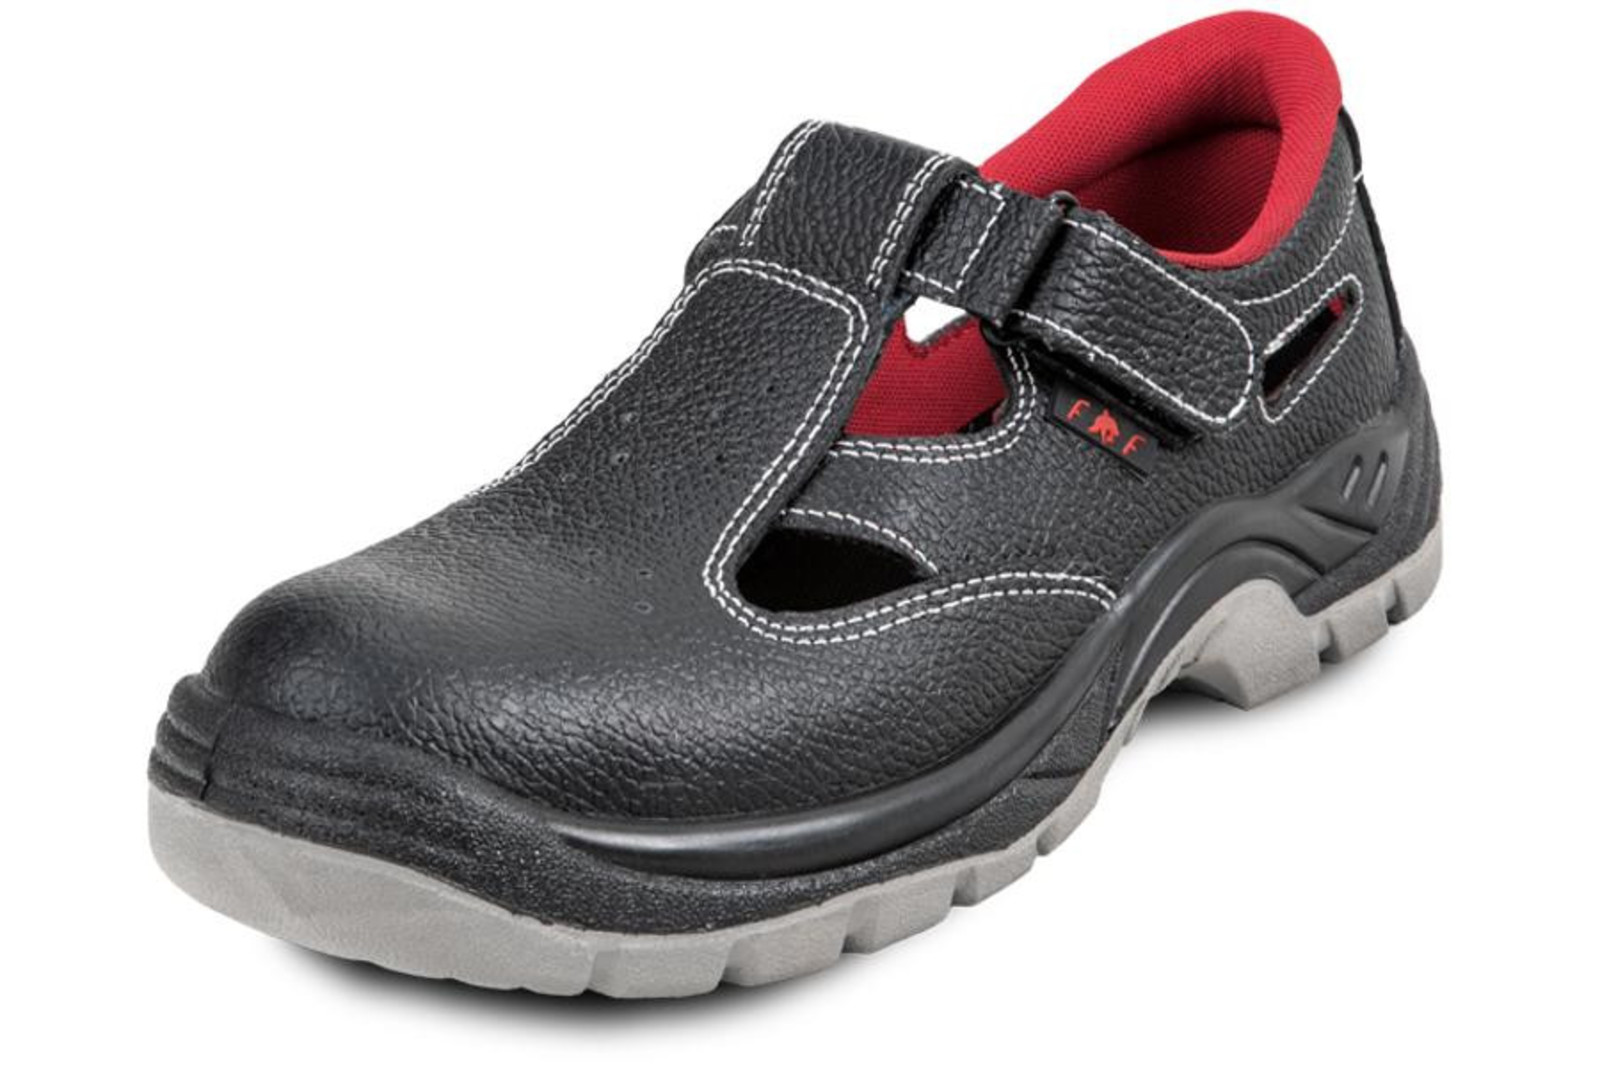 Pracovné sandále Bonn SC 01-002 O1 - veľkosť: 42, farba: čierna